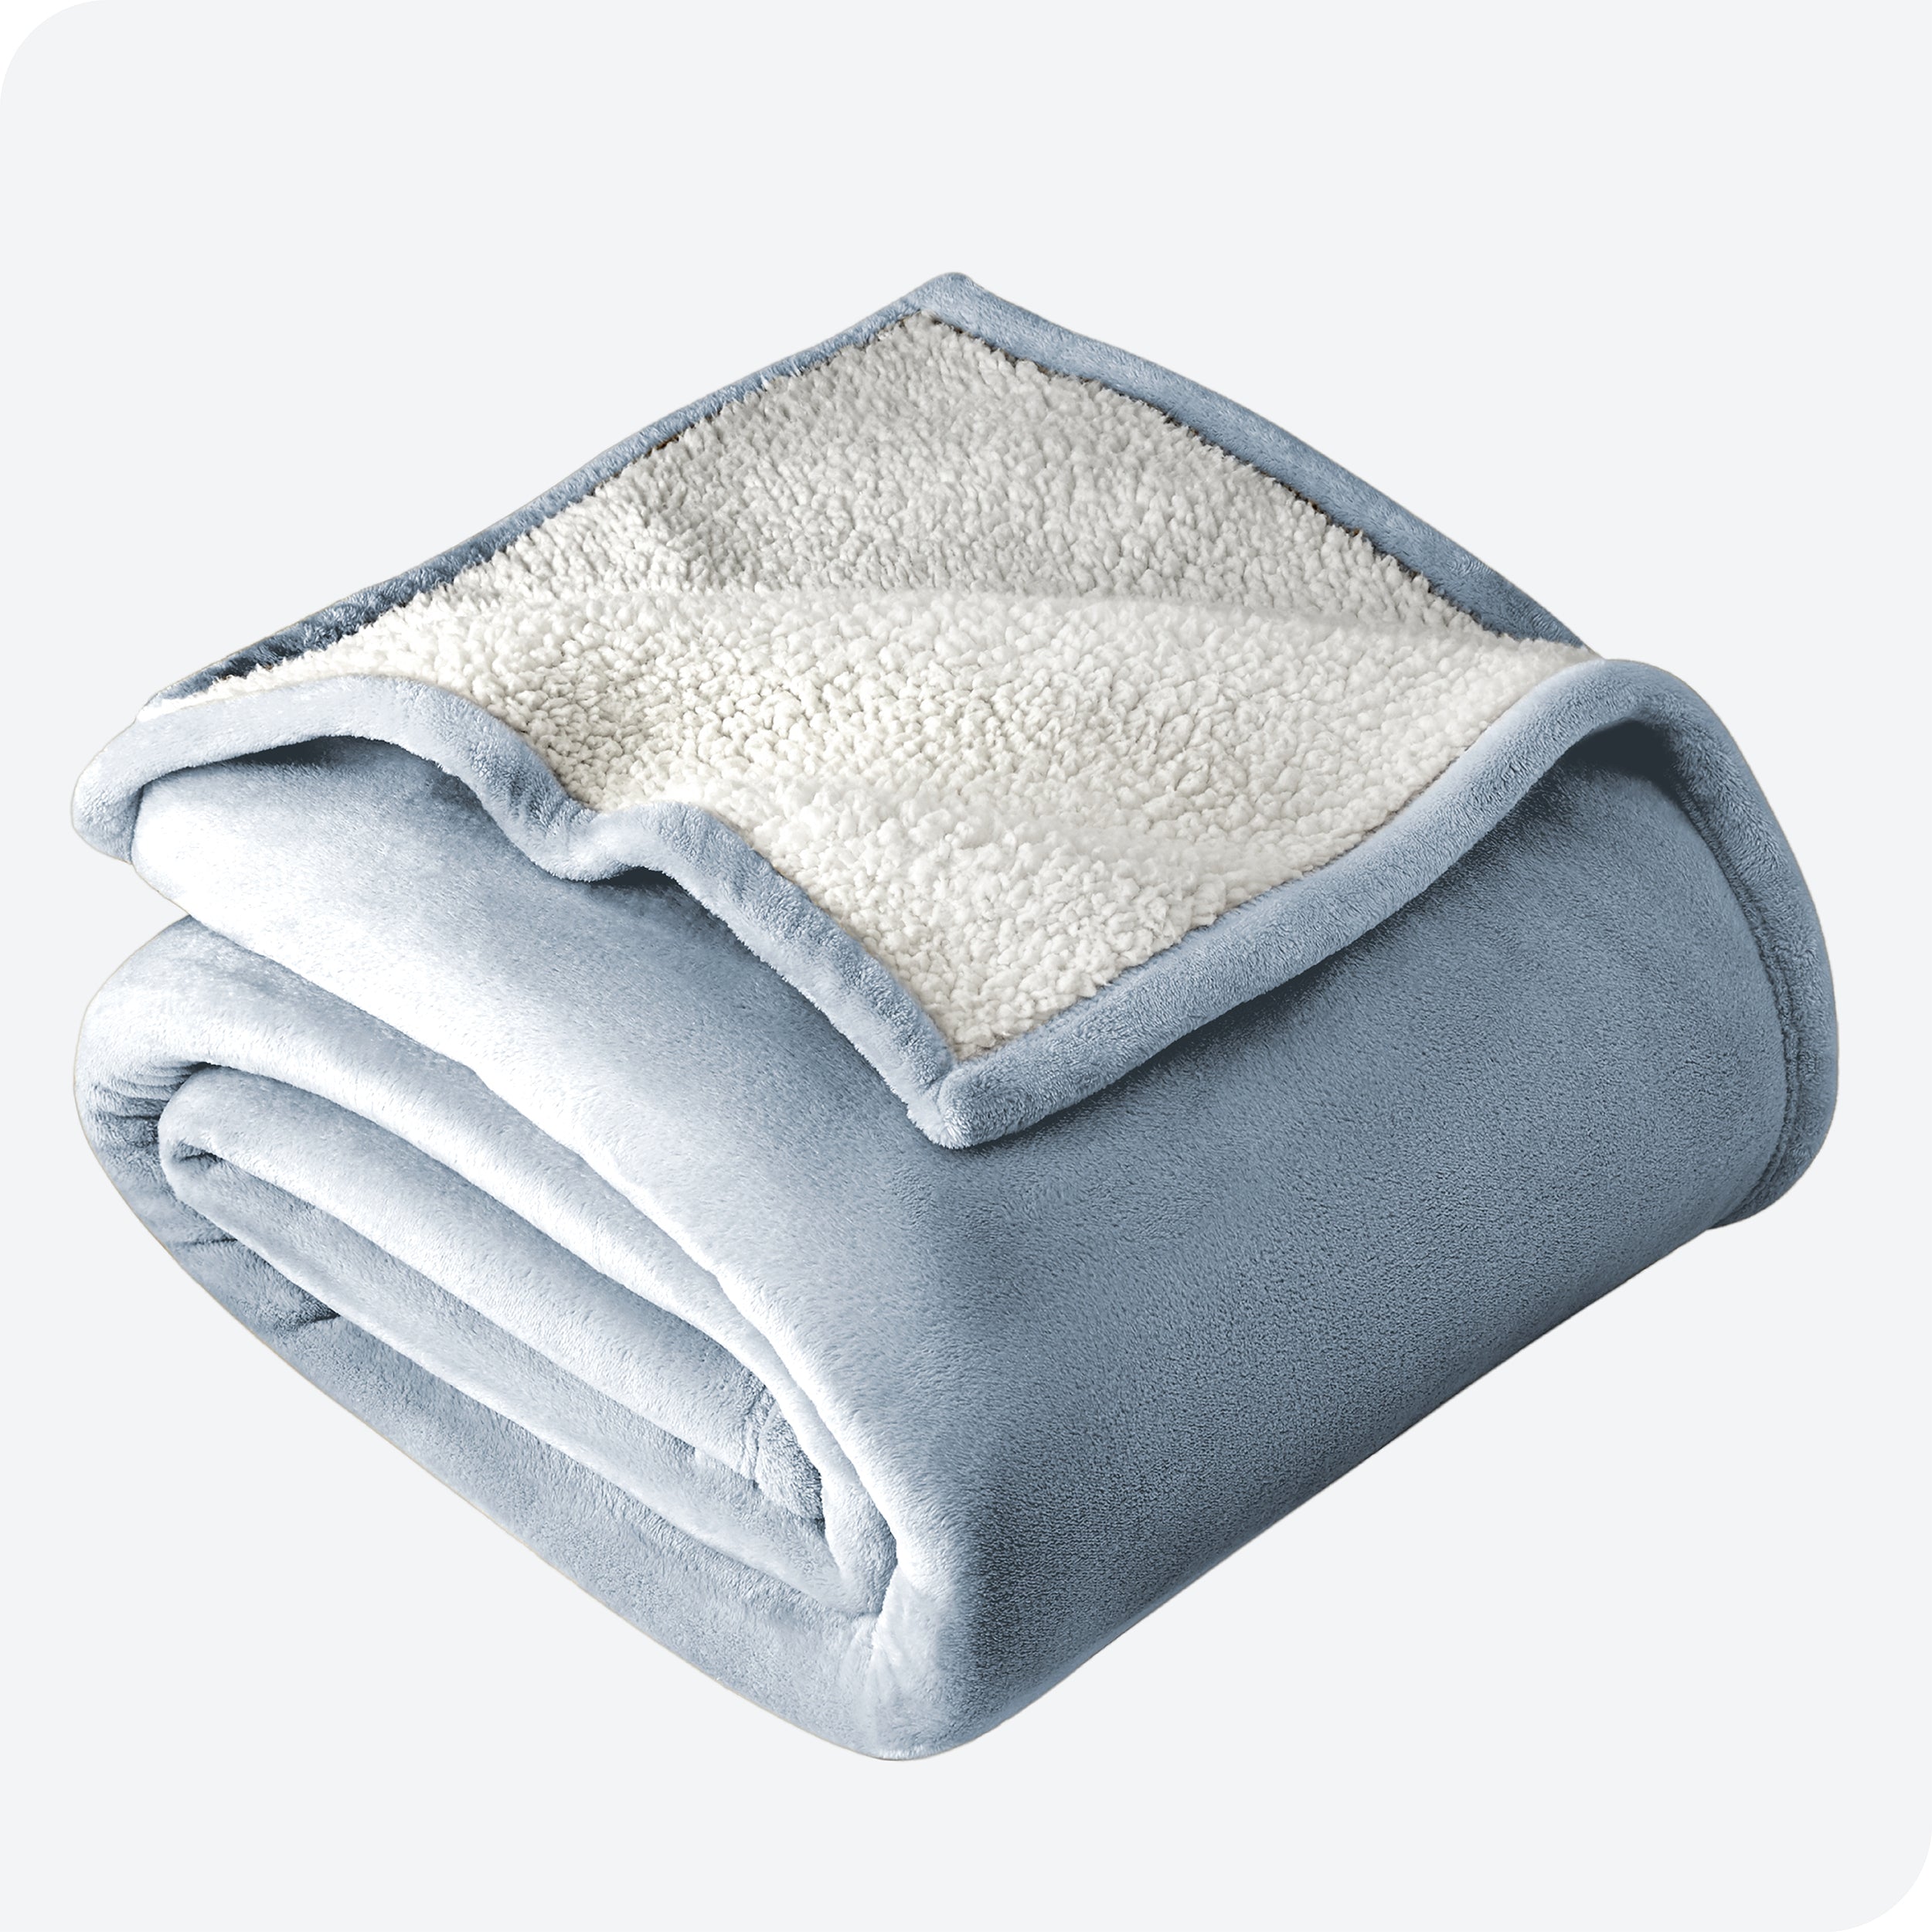 Dusty Blue Sherpa Blanket folded